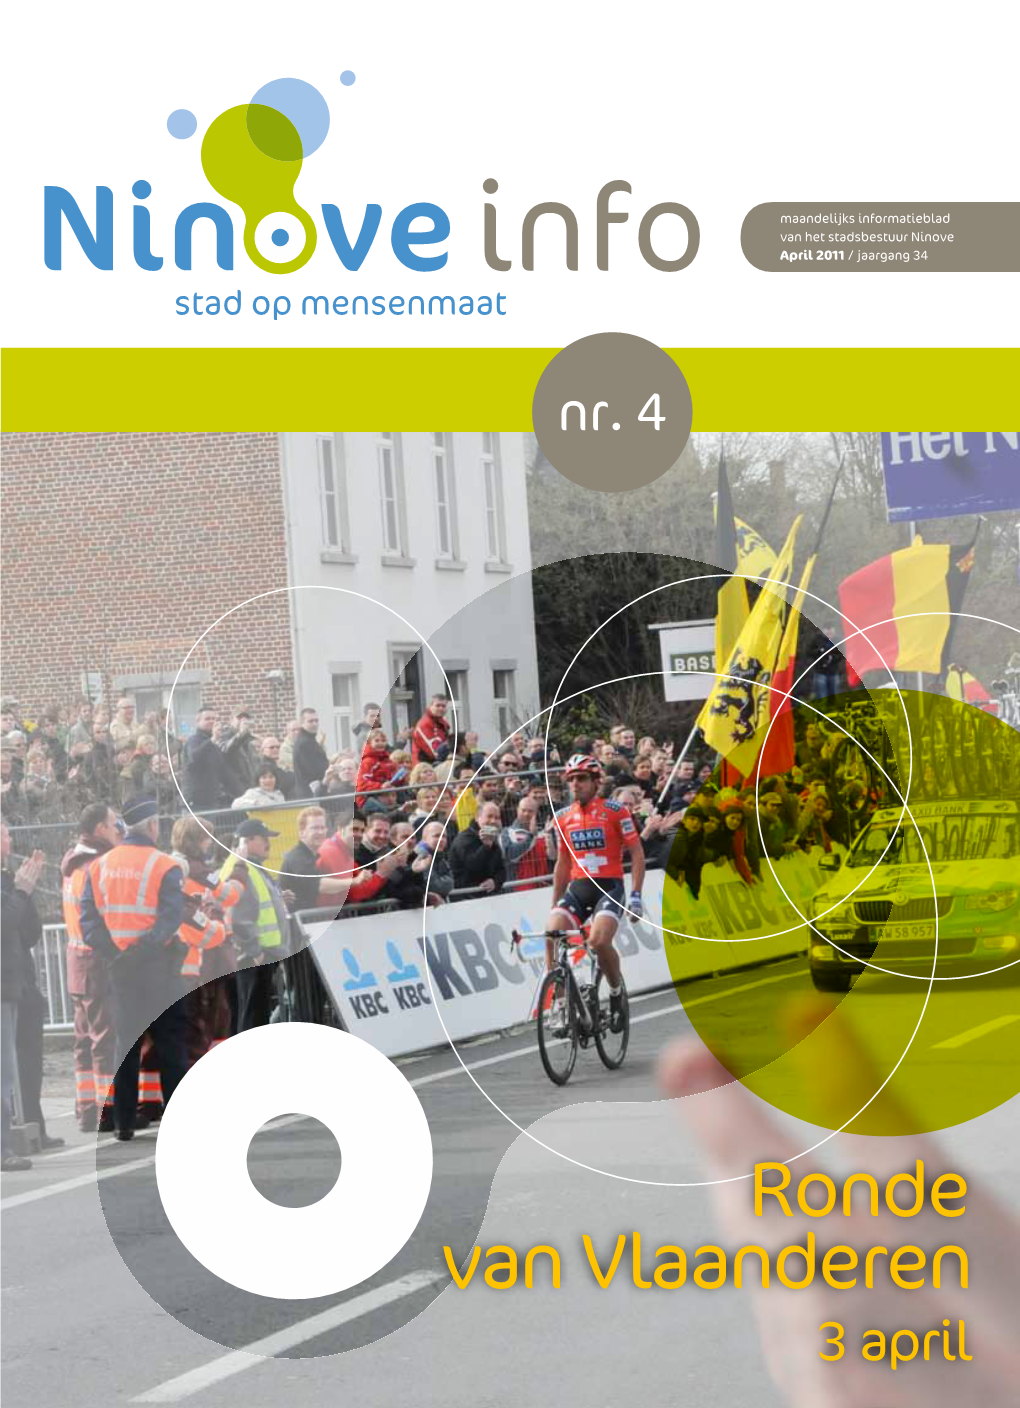 Ronde Van Vlaanderen 3 April Brakelsesteenweg 607, 9400 Ninove/Voorde Tel